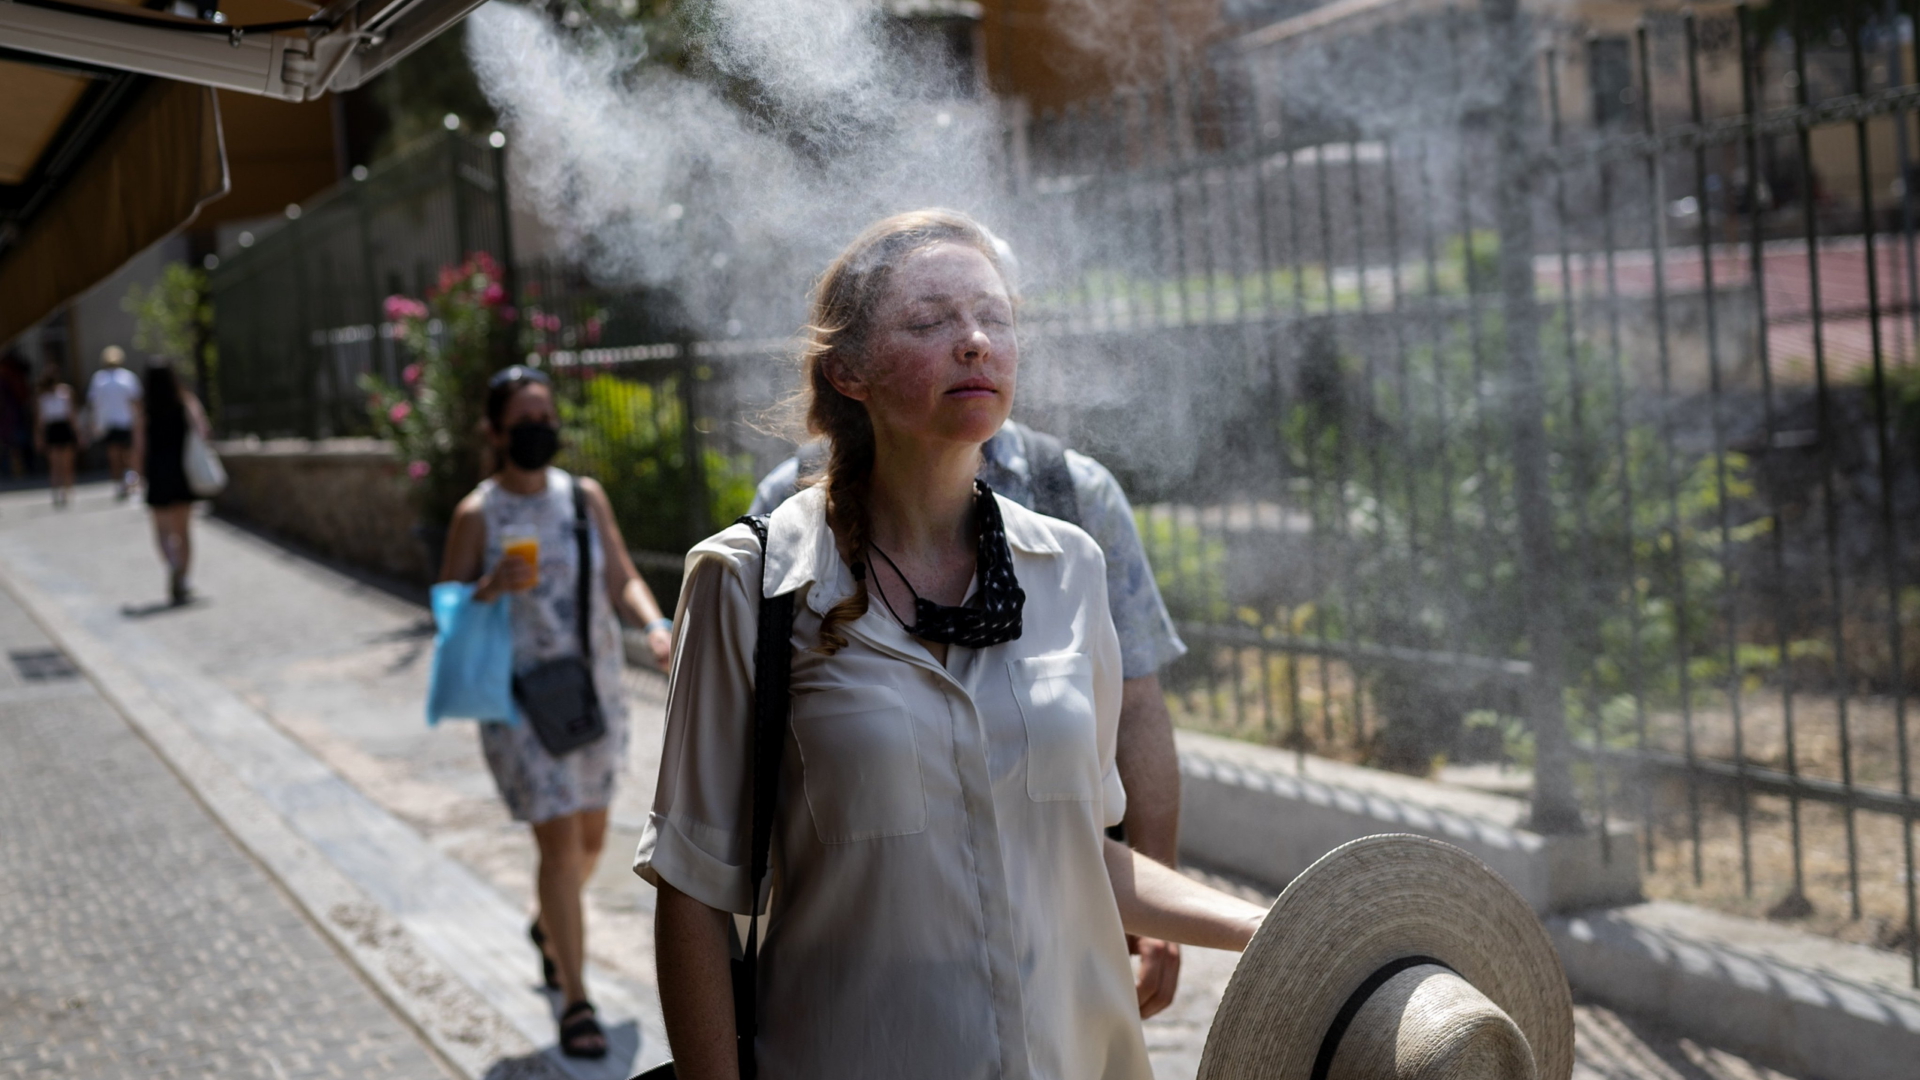 Eine Frau geht durch einen Sprühnebel, um sich in der großen Hitze zu erfrischen.